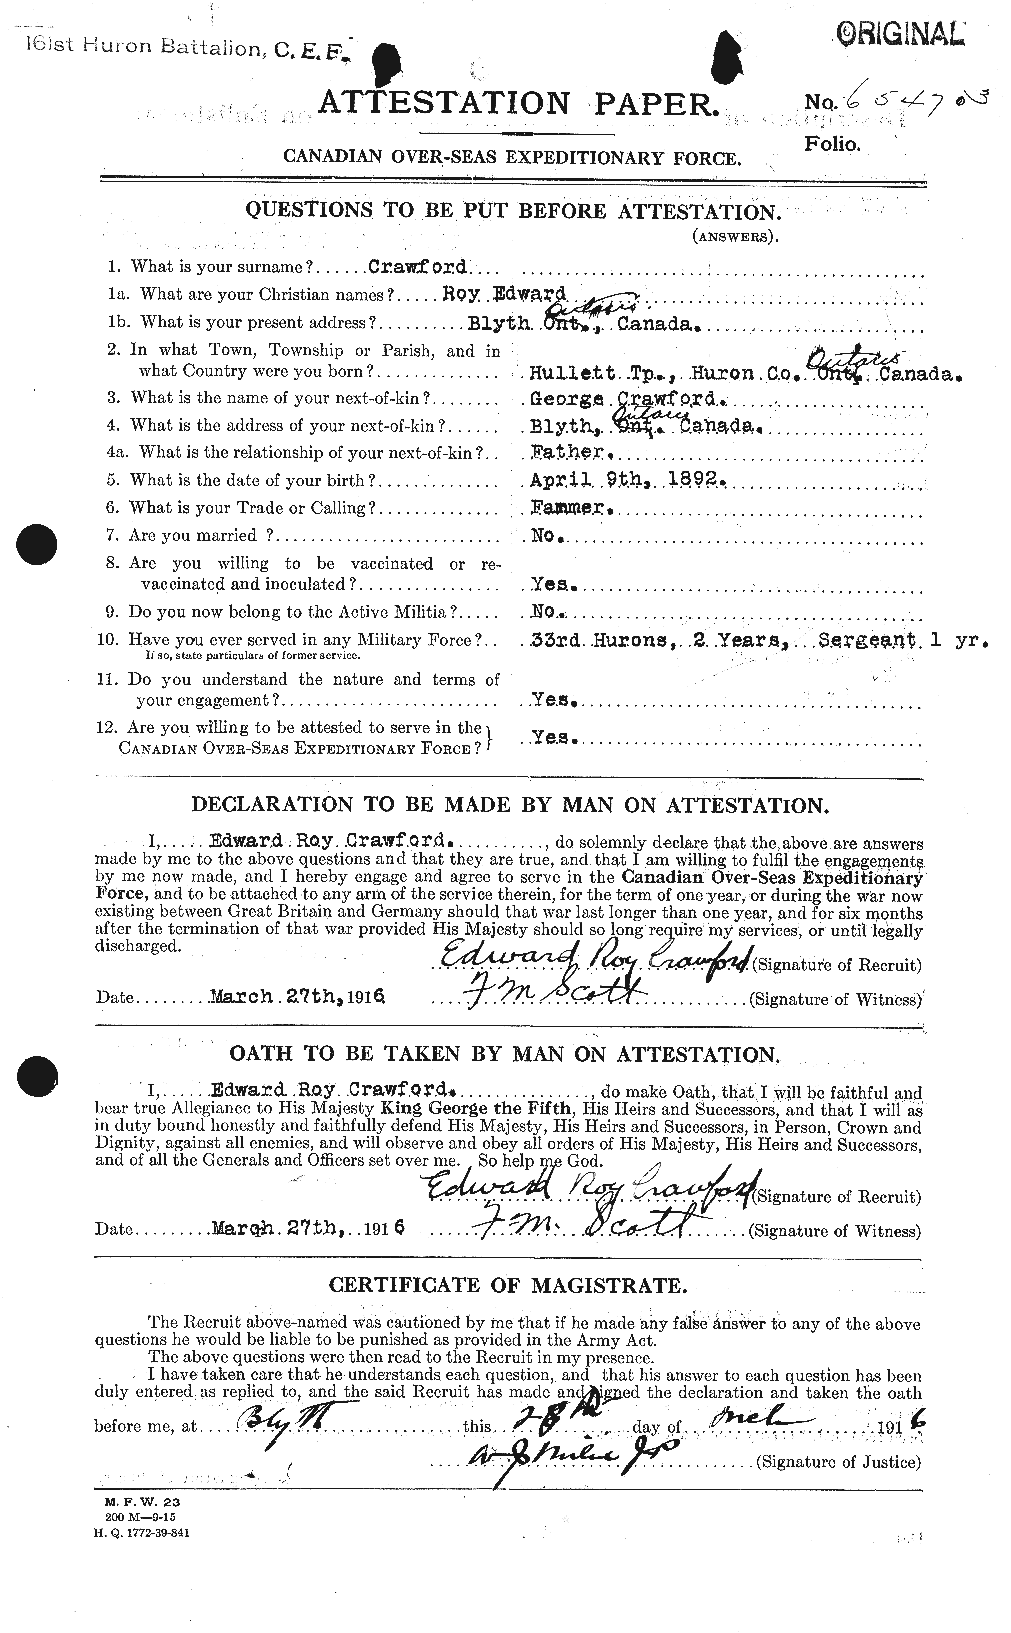 Dossiers du Personnel de la Première Guerre mondiale - CEC 061386a